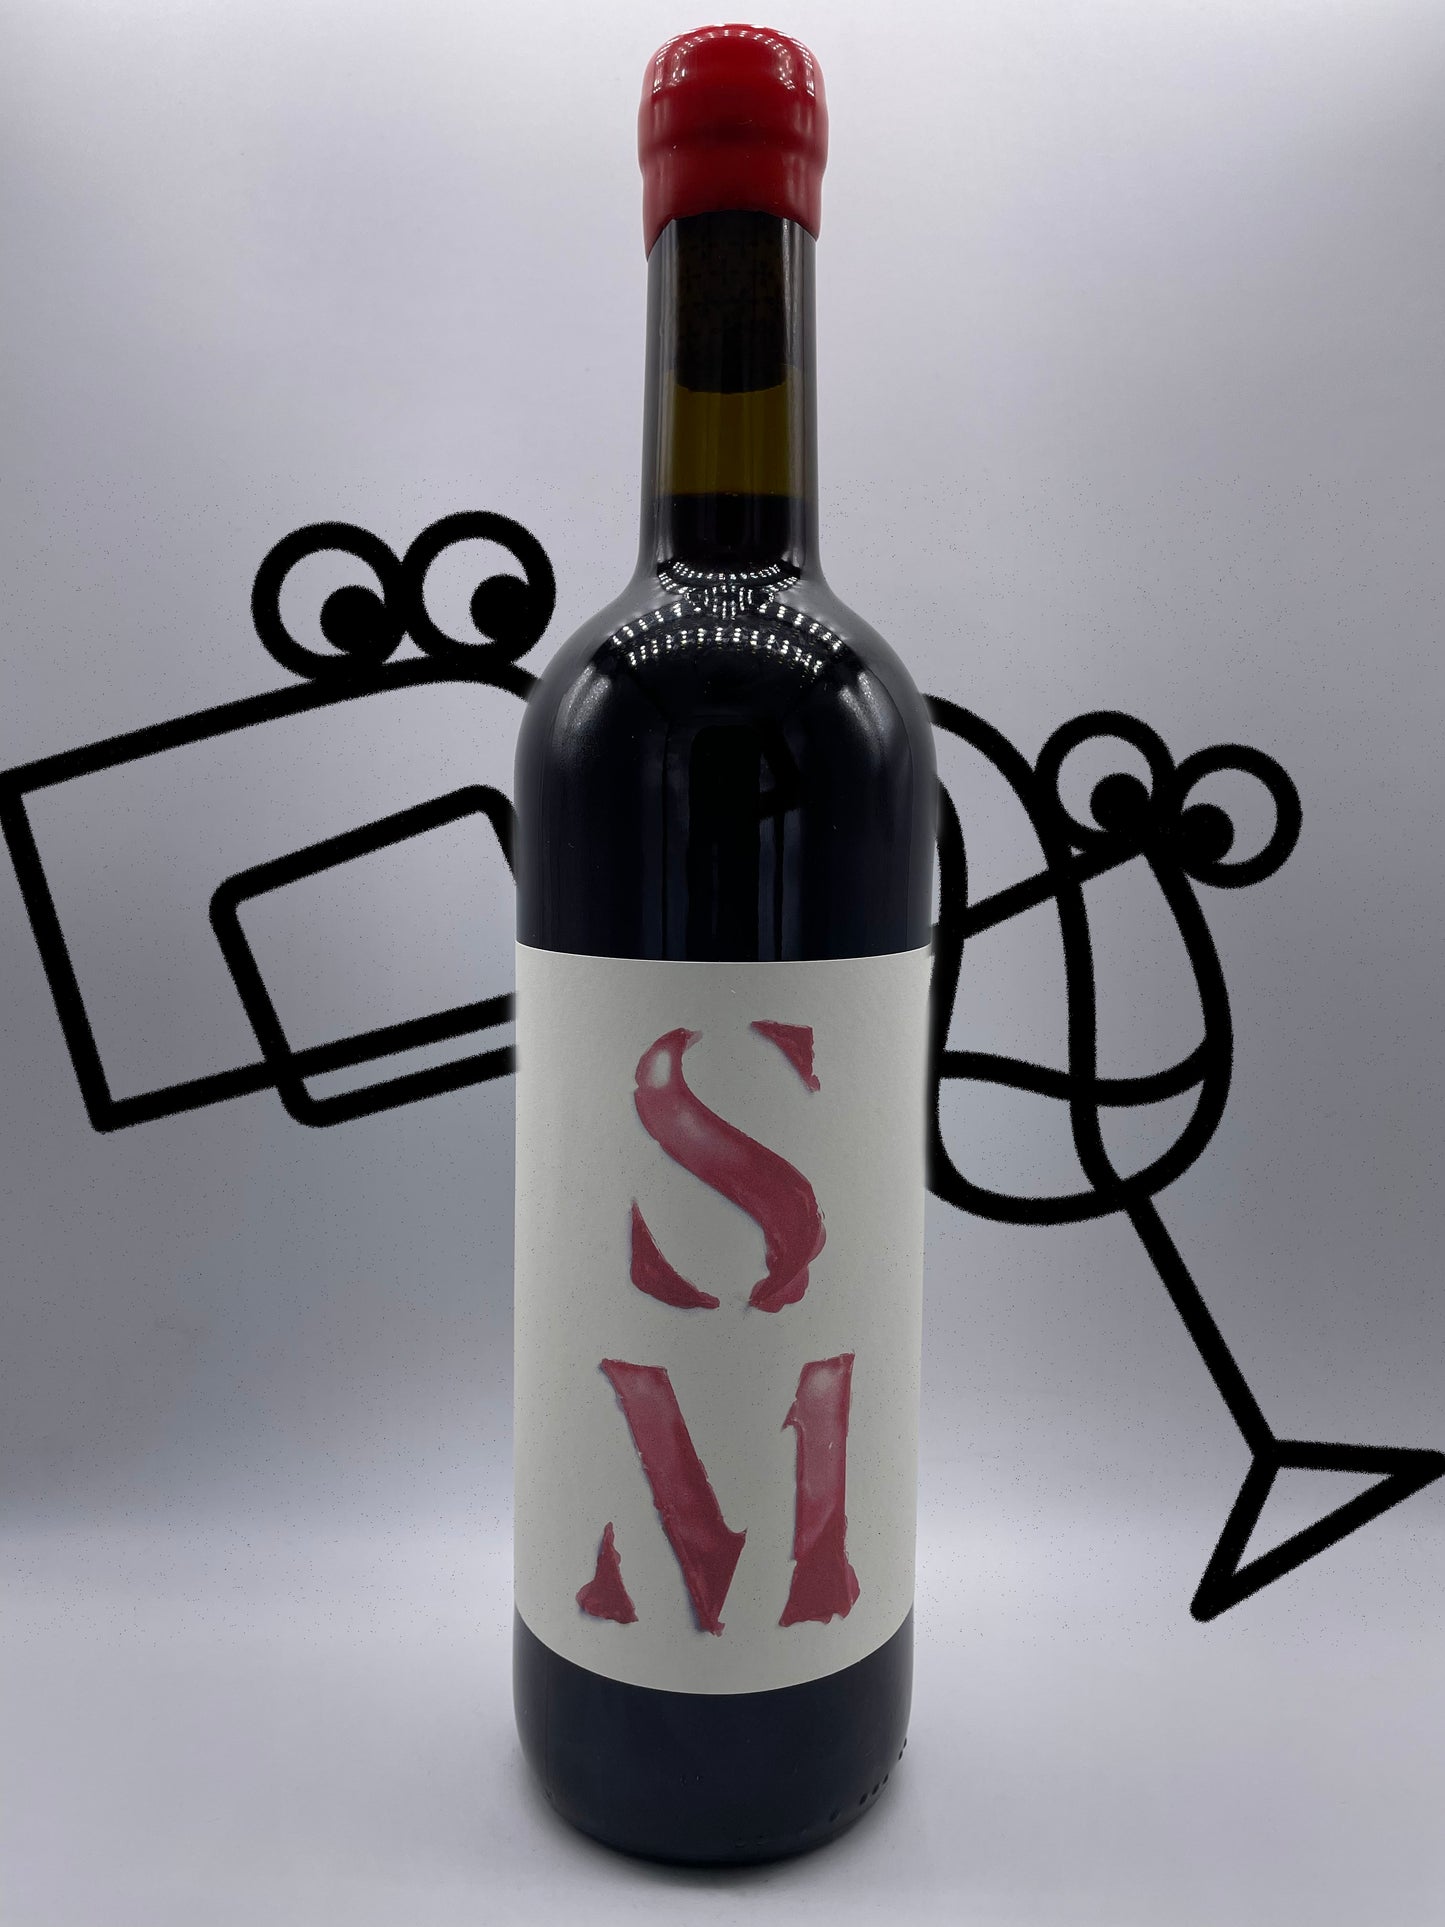 Partida Creus 'S M' 2019 Catalonia, Spain Williston Park Wines